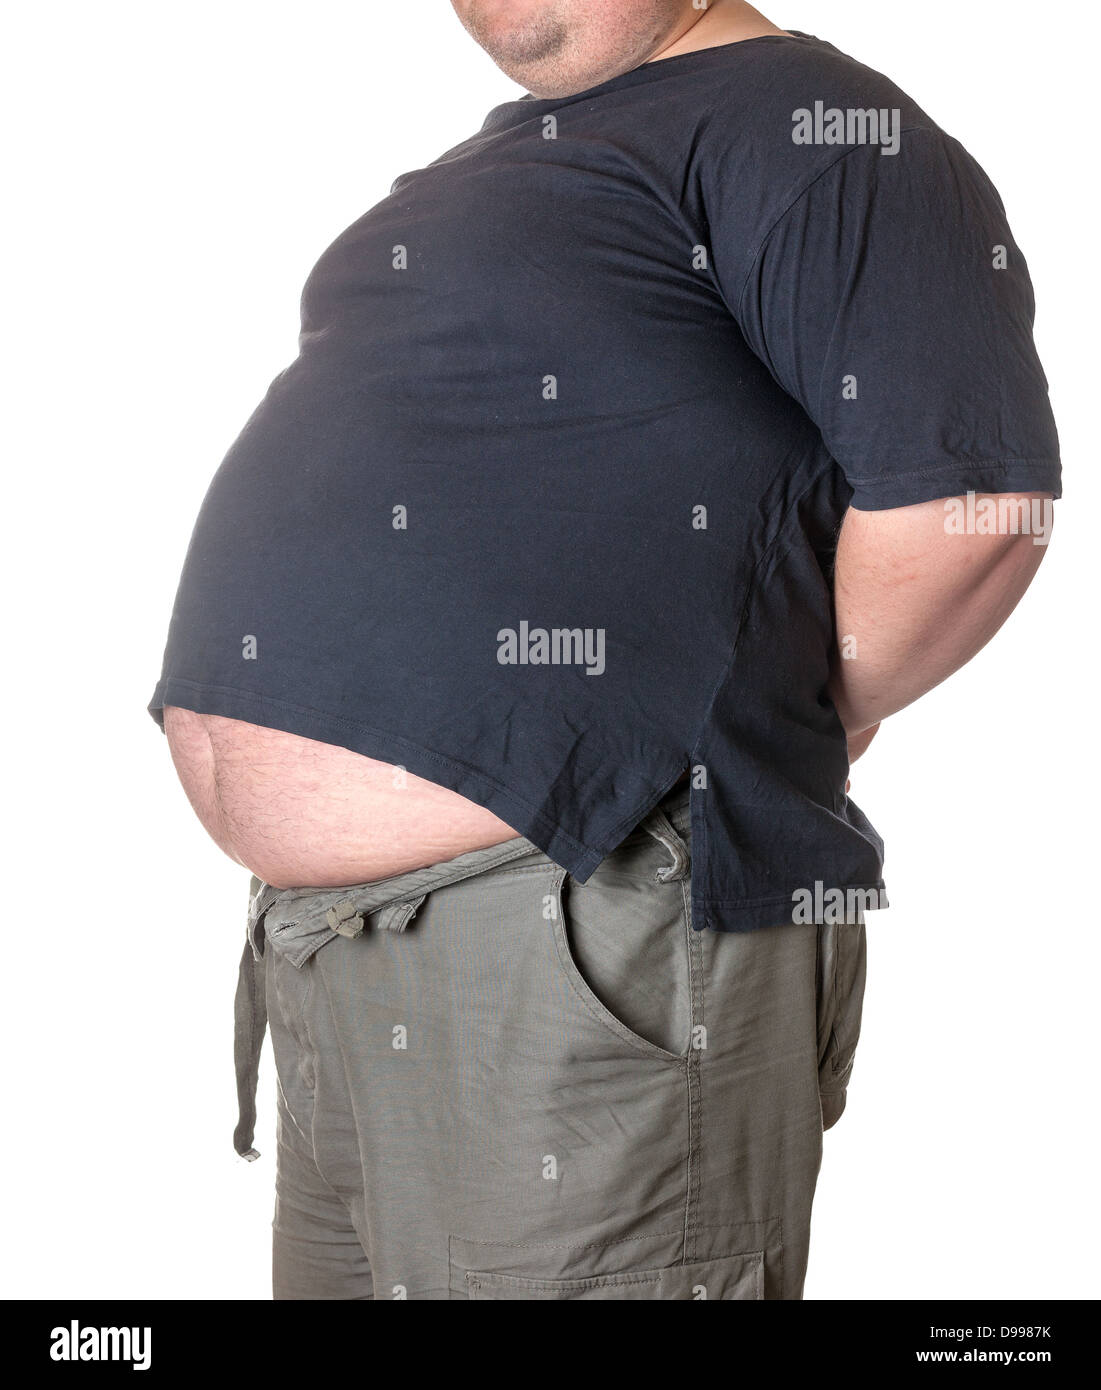 Uomo grasso della pancia immagini e fotografie stock ad alta risoluzione -  Alamy